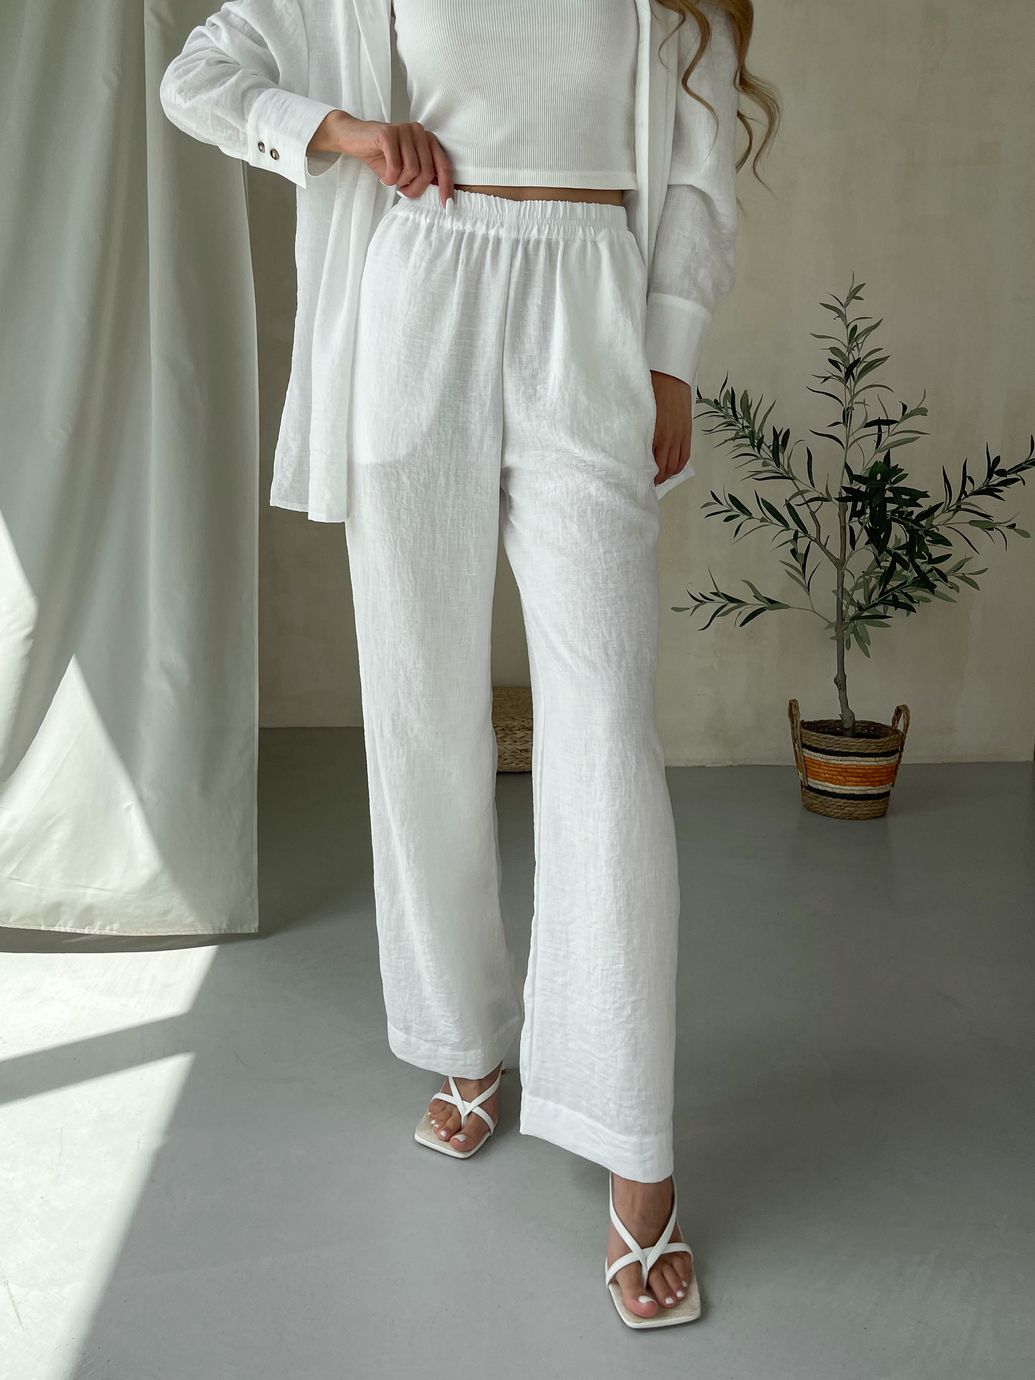 Купить Женский костюм с широкими штанами и рубашкой из льна белый Merlini Лечче 100000542, размер 42-44 (S-M) в интернет-магазине